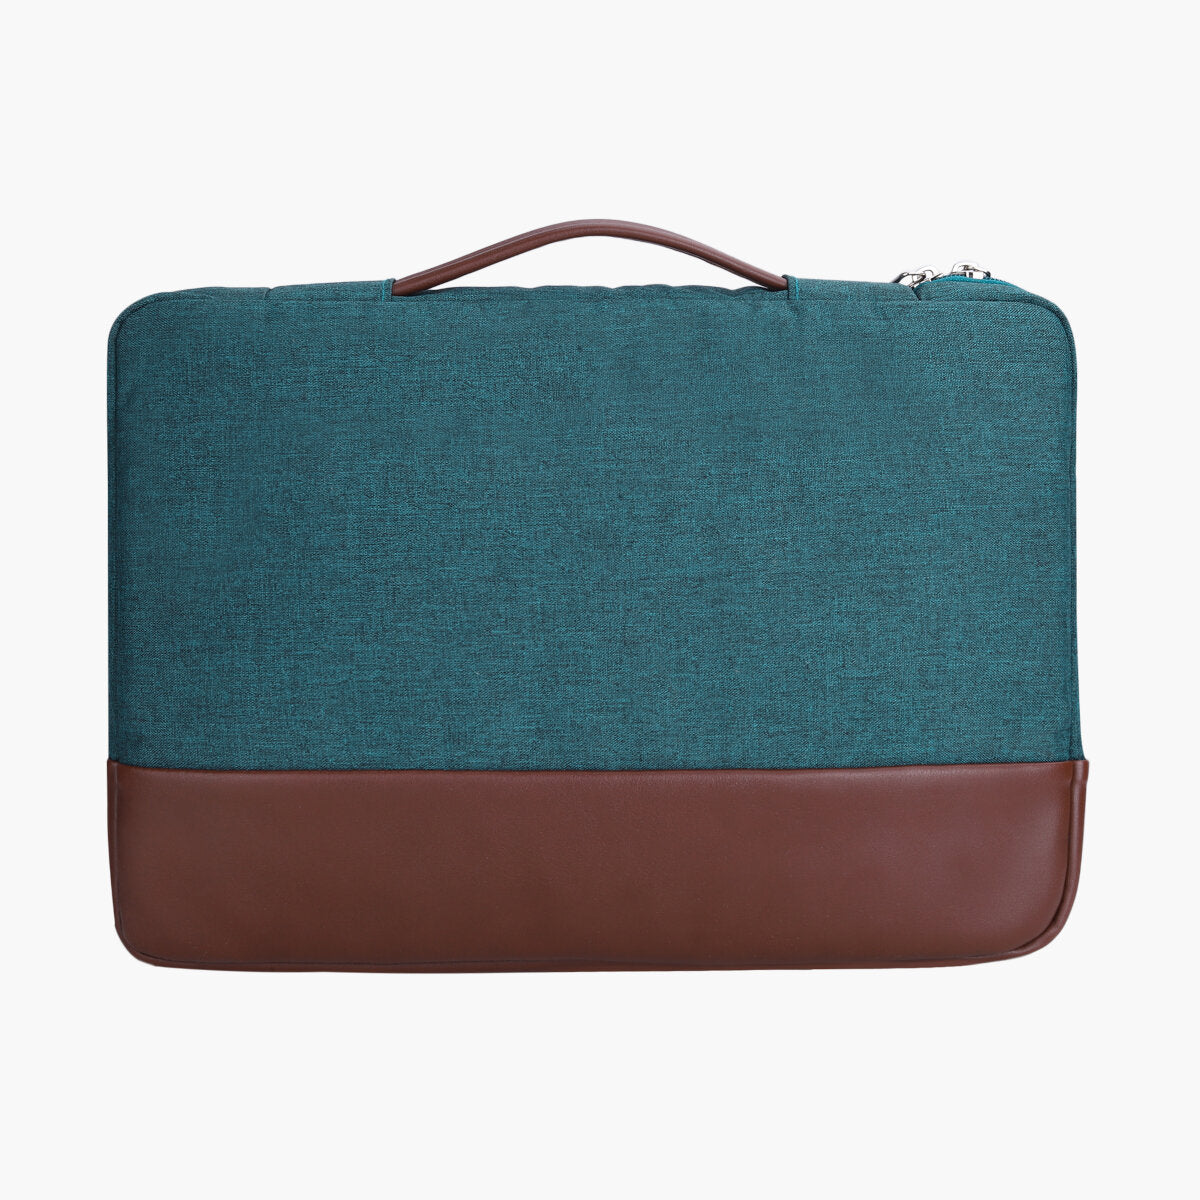 Moss Green | Protecta Lima Laptop Bag